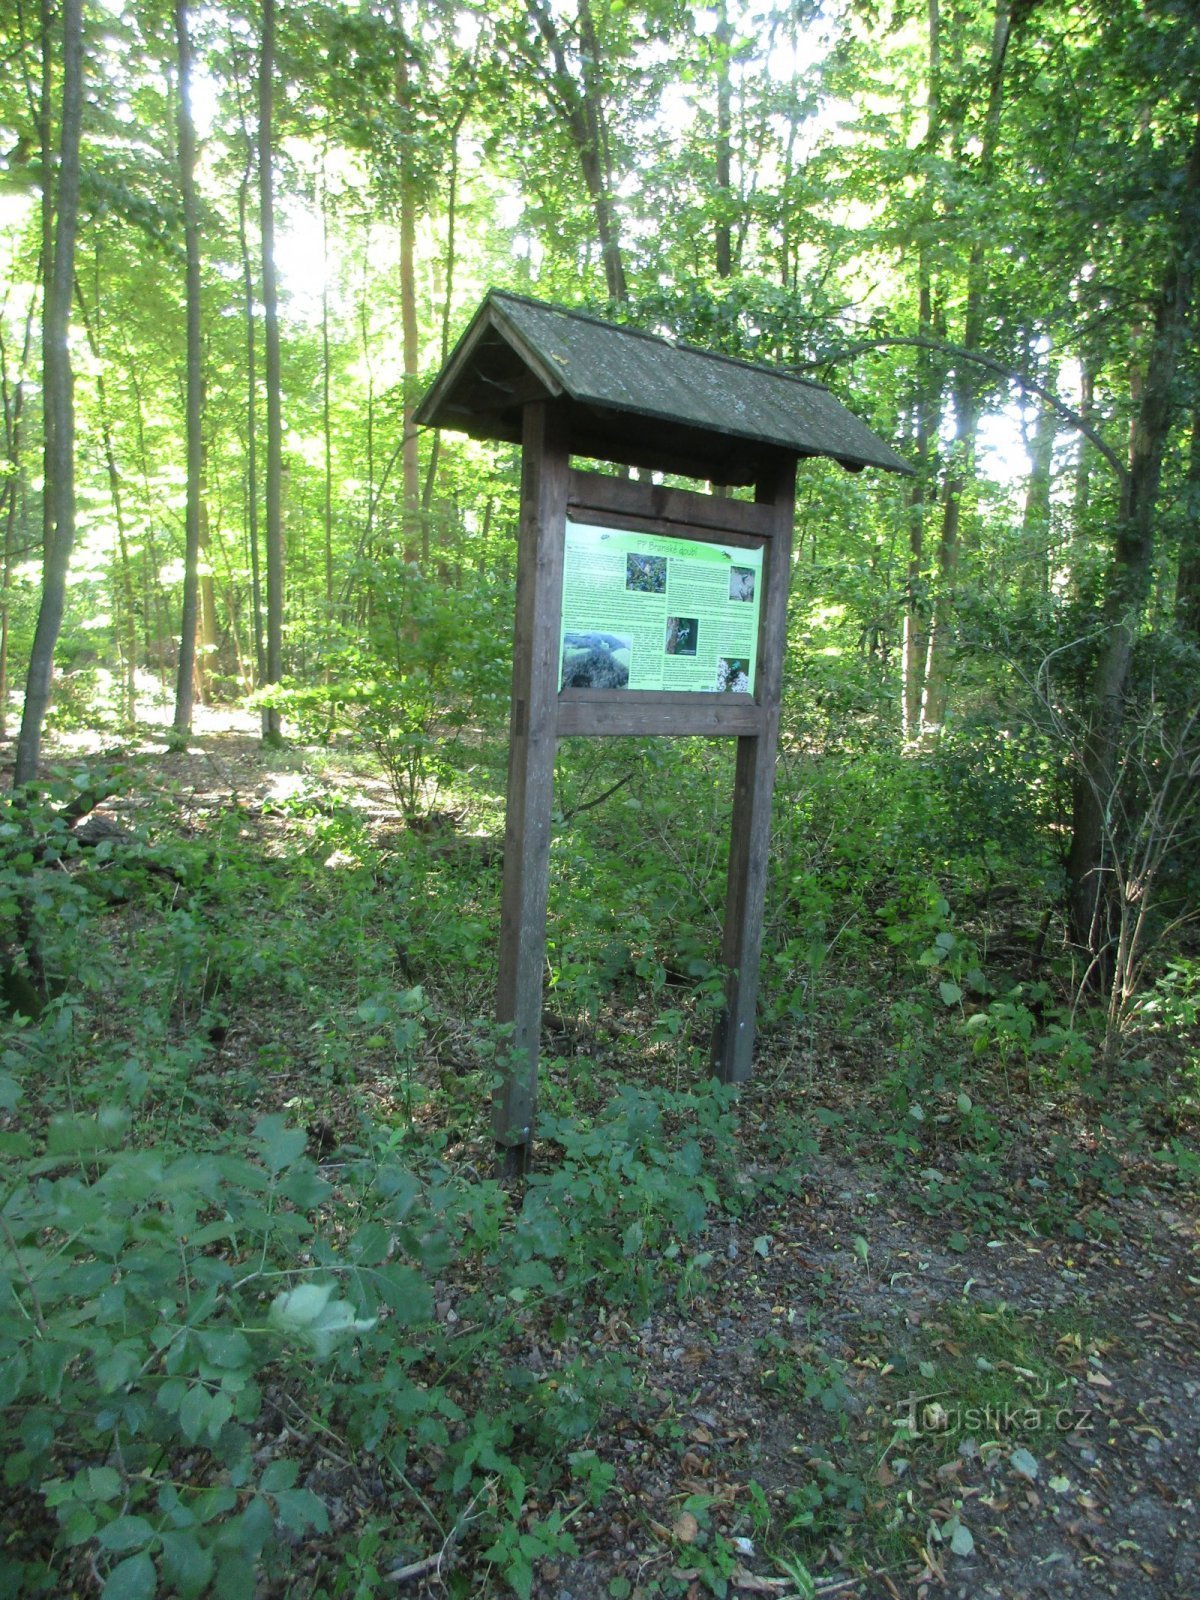 Informationstafel auf der Route des grünen touristischen Zeichens in Richtung Branná und Kojákovice